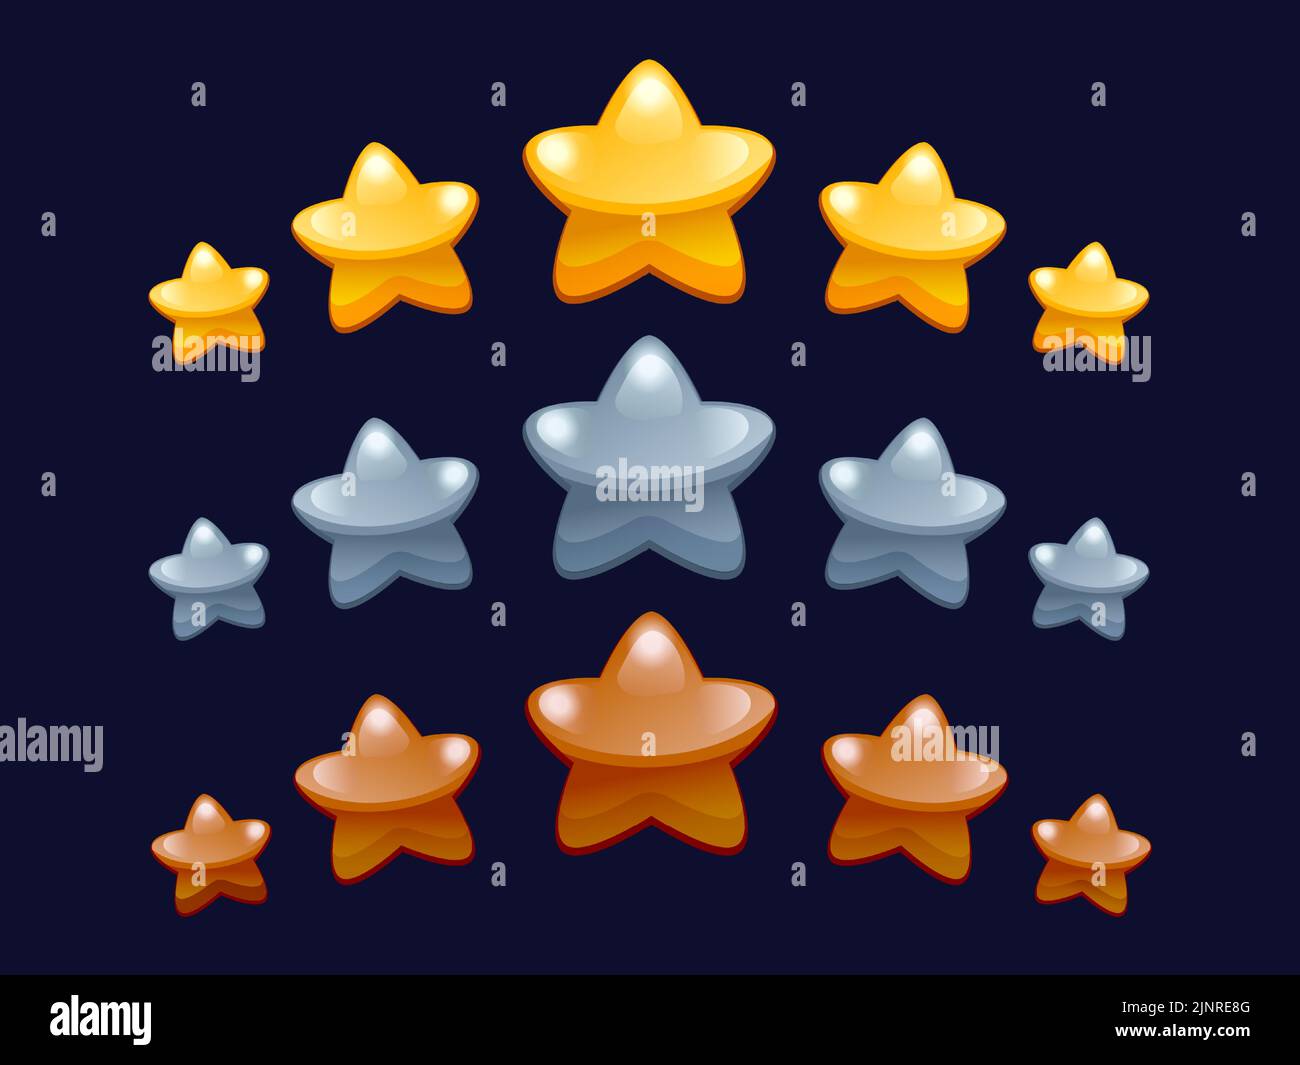 Bewertung der Spielstars. Cartoon-Level-Bonus und gewinnen Auszeichnung mit Reihe von Sternen Grafik-Vorlage für mobile 2D Spiel Interface-Element. Vektorset Stock Vektor